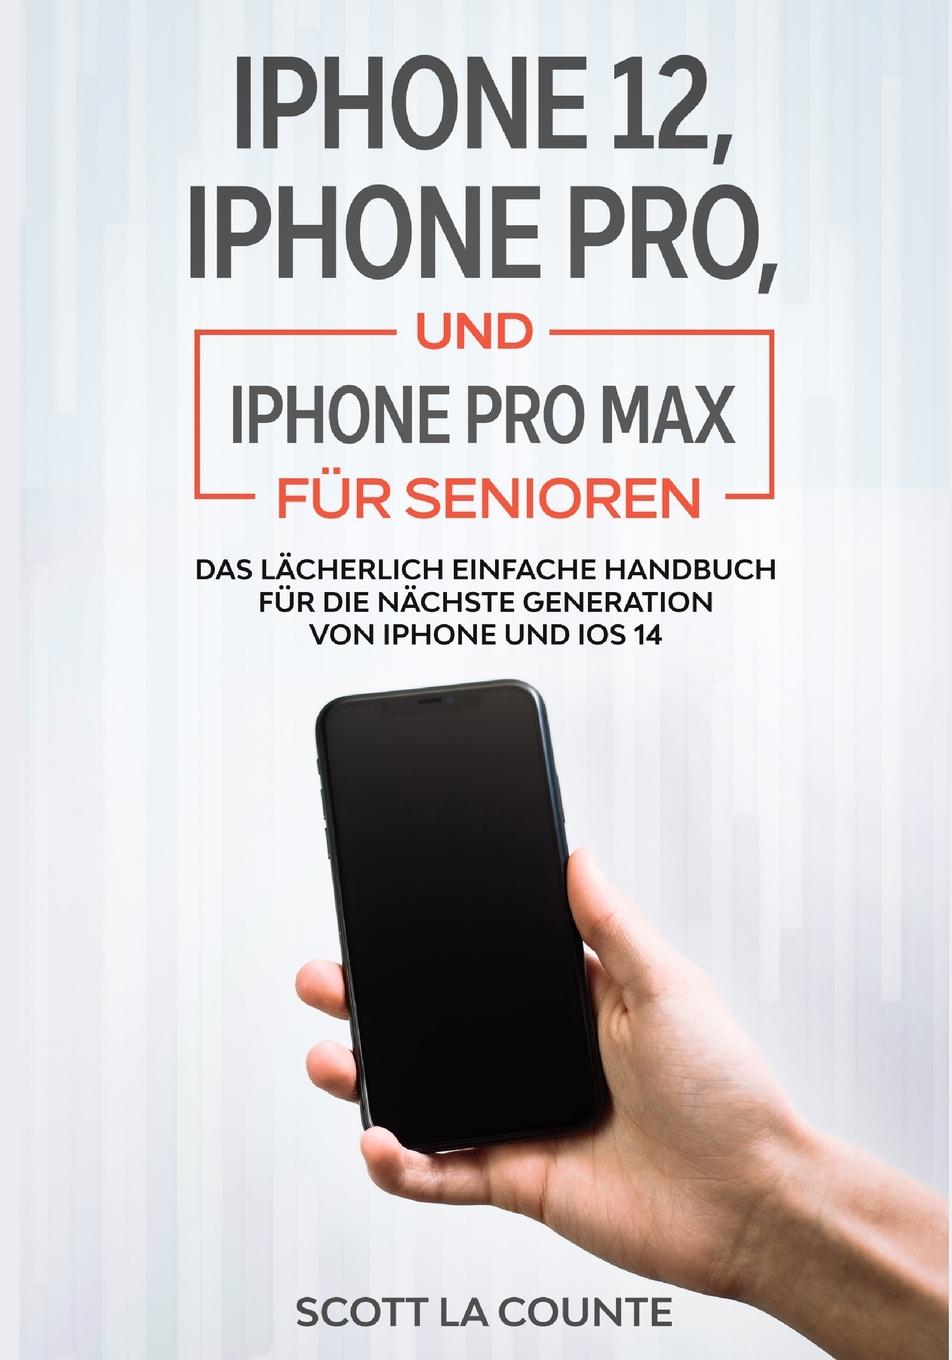 Knjiga iPhone 12, iPhone Pro, und iPhone Pro Max Fur Senioren 